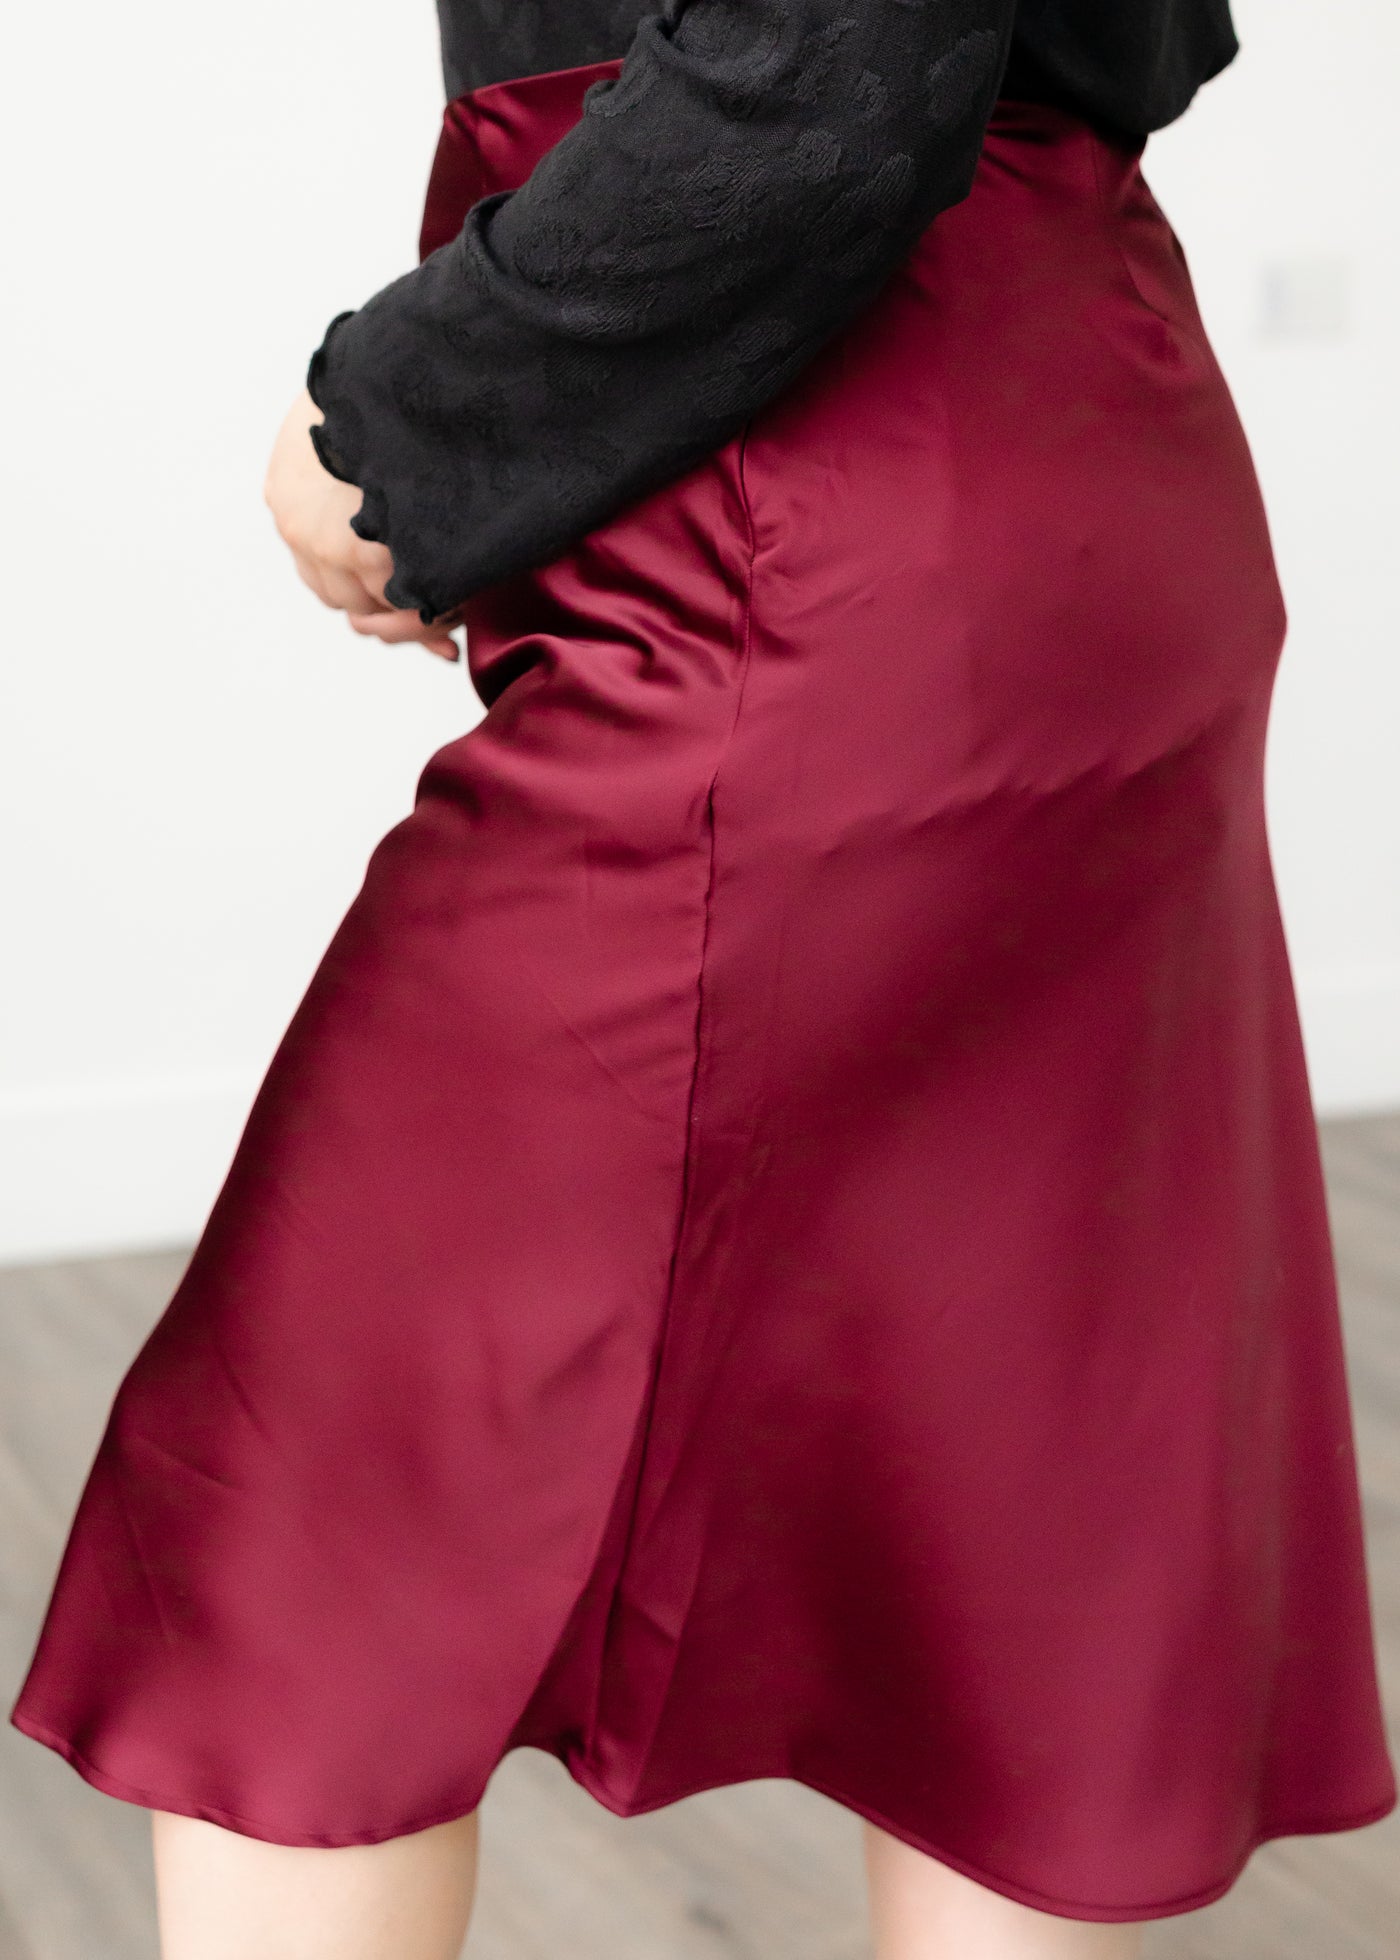 Vida Burgundy Skirt